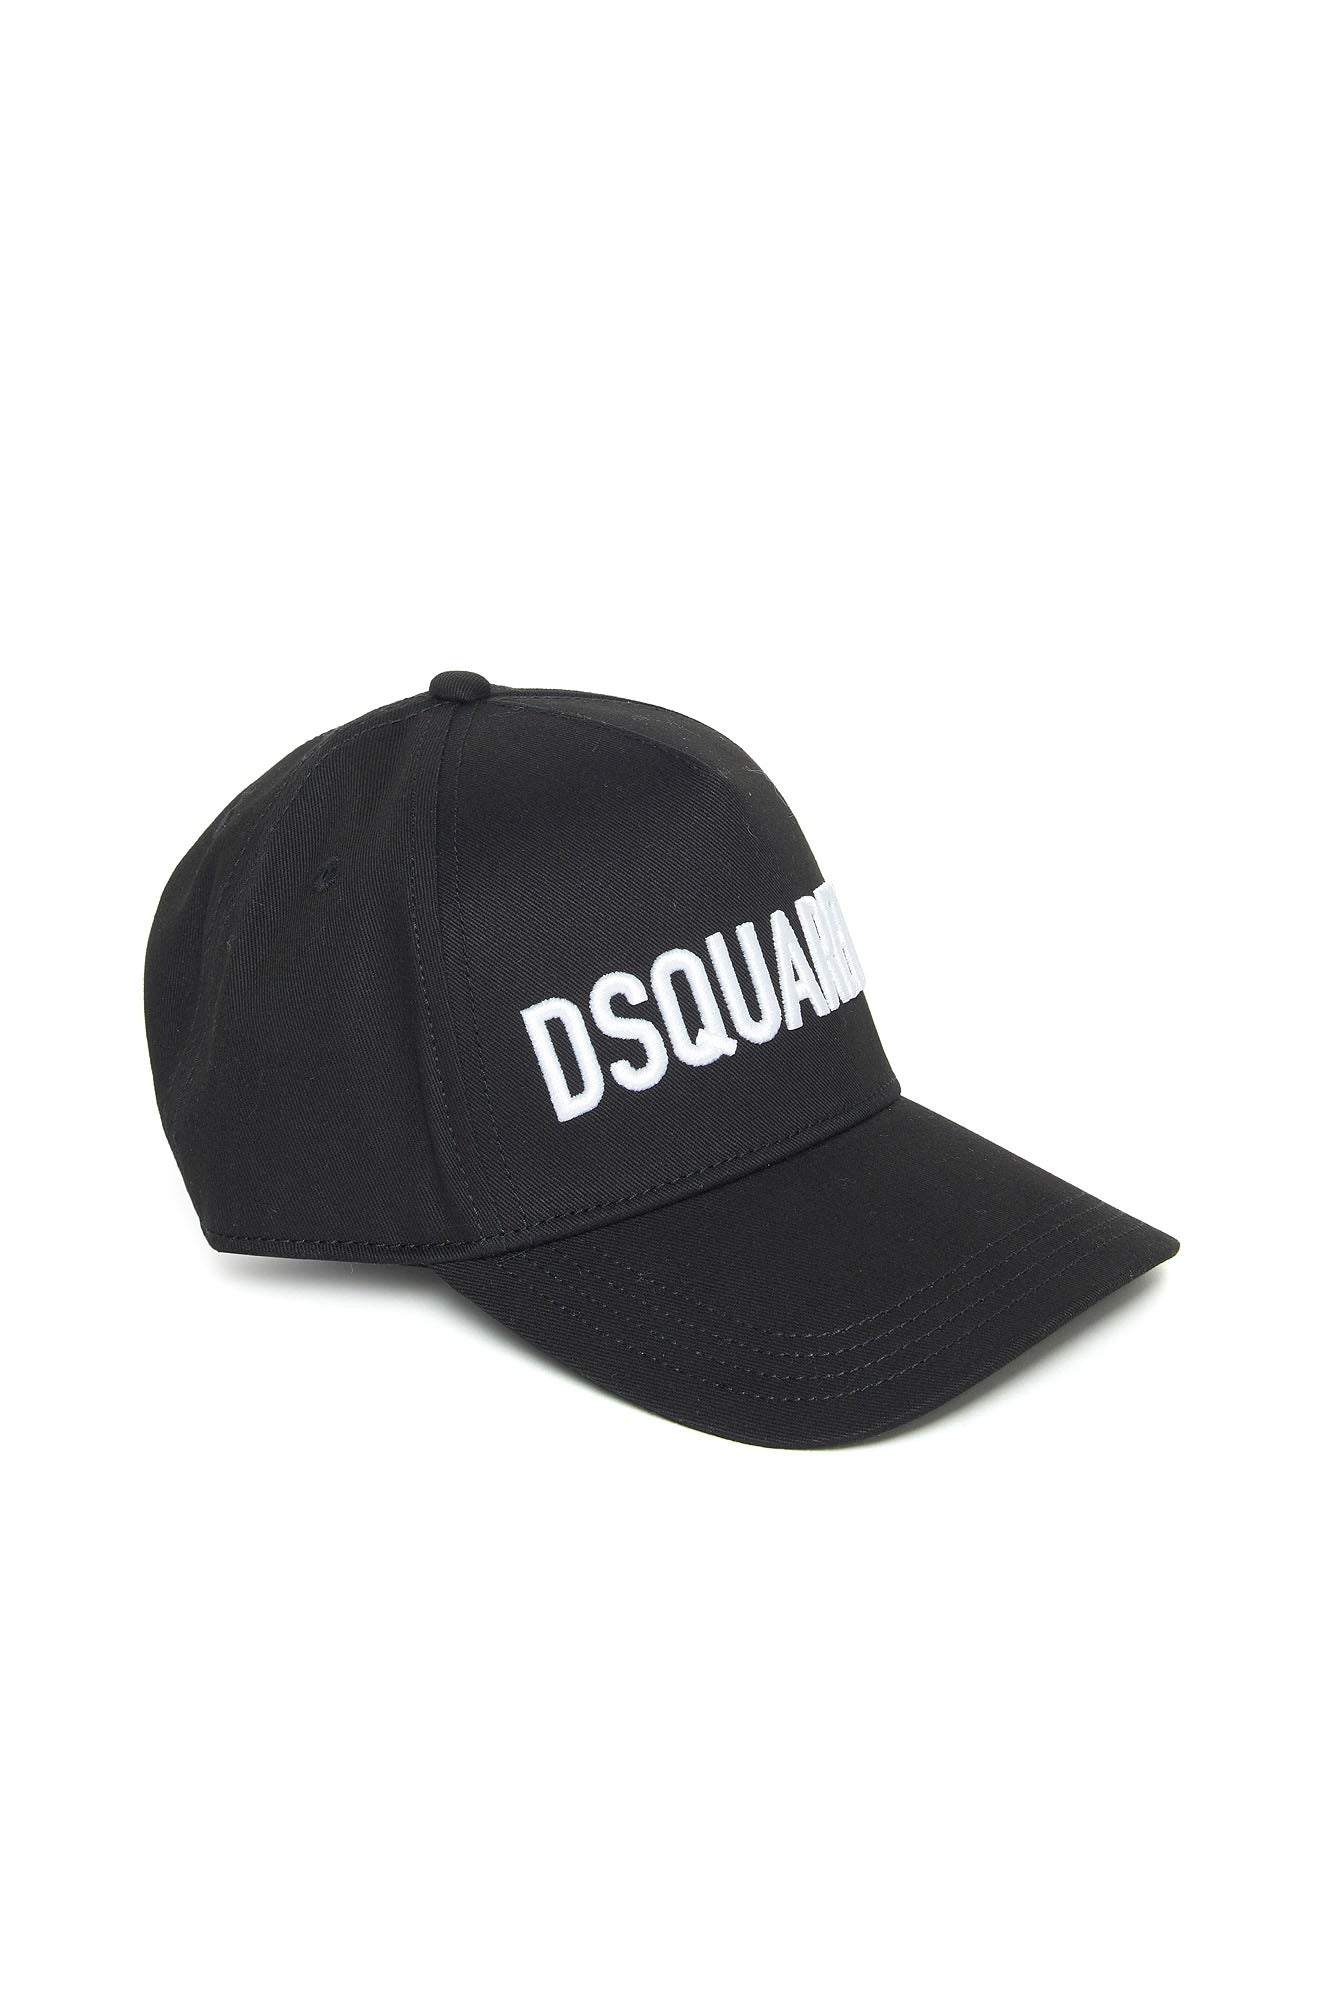 DSQUARED2-Cappello Bambino Logo-Nero